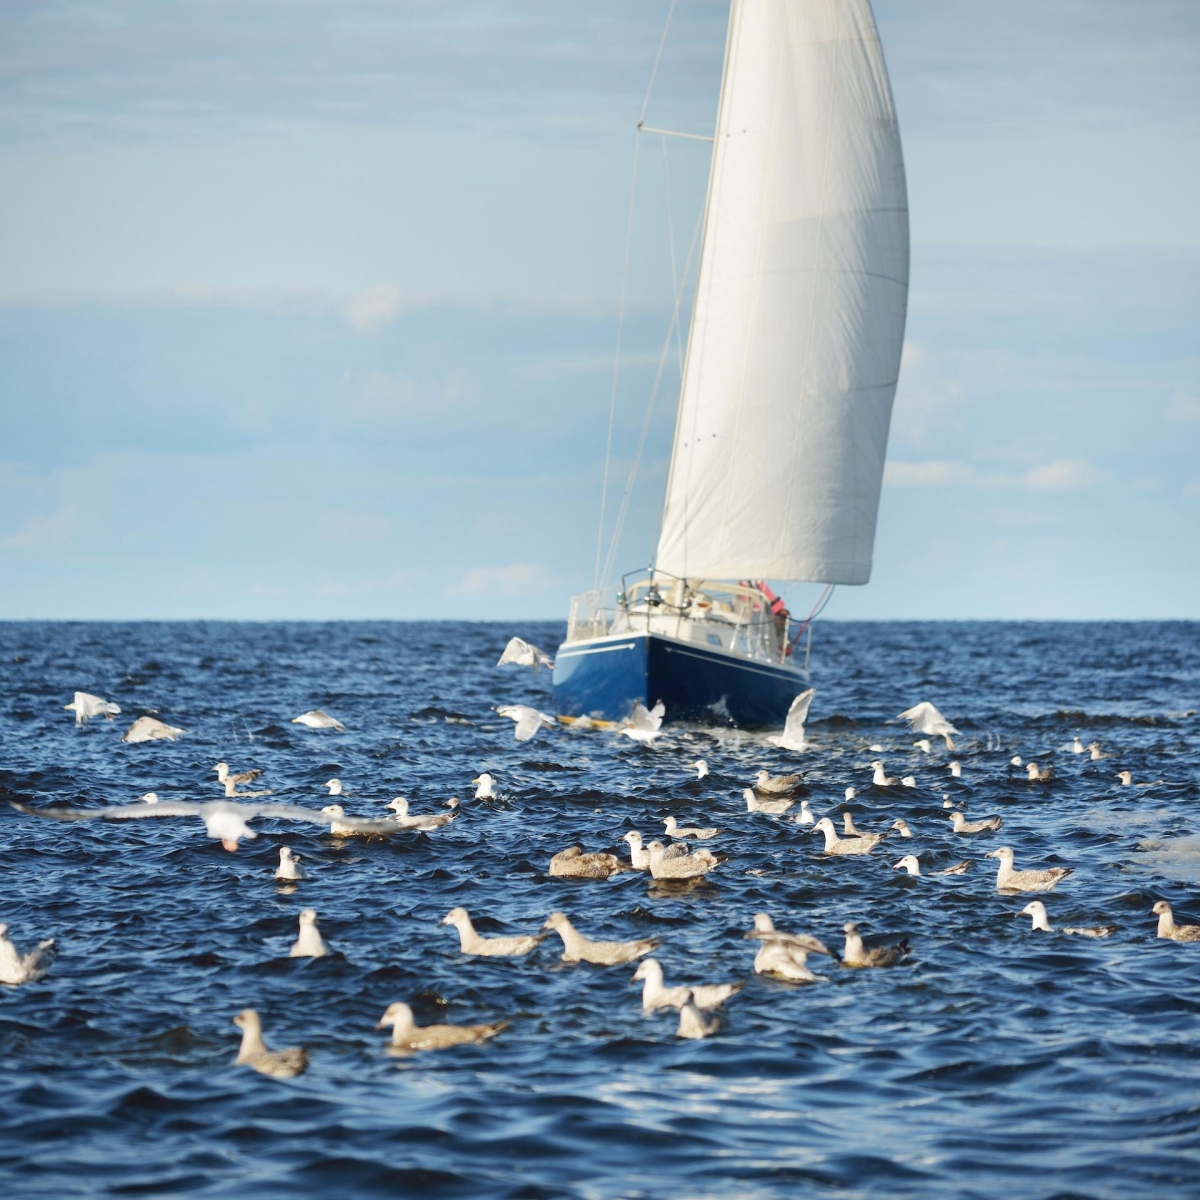 Яхта с синим шлюпом плывет по открытому Балтийскому морю в ясный день, крупным планом летают чайки.  Рижский залив, Латвия